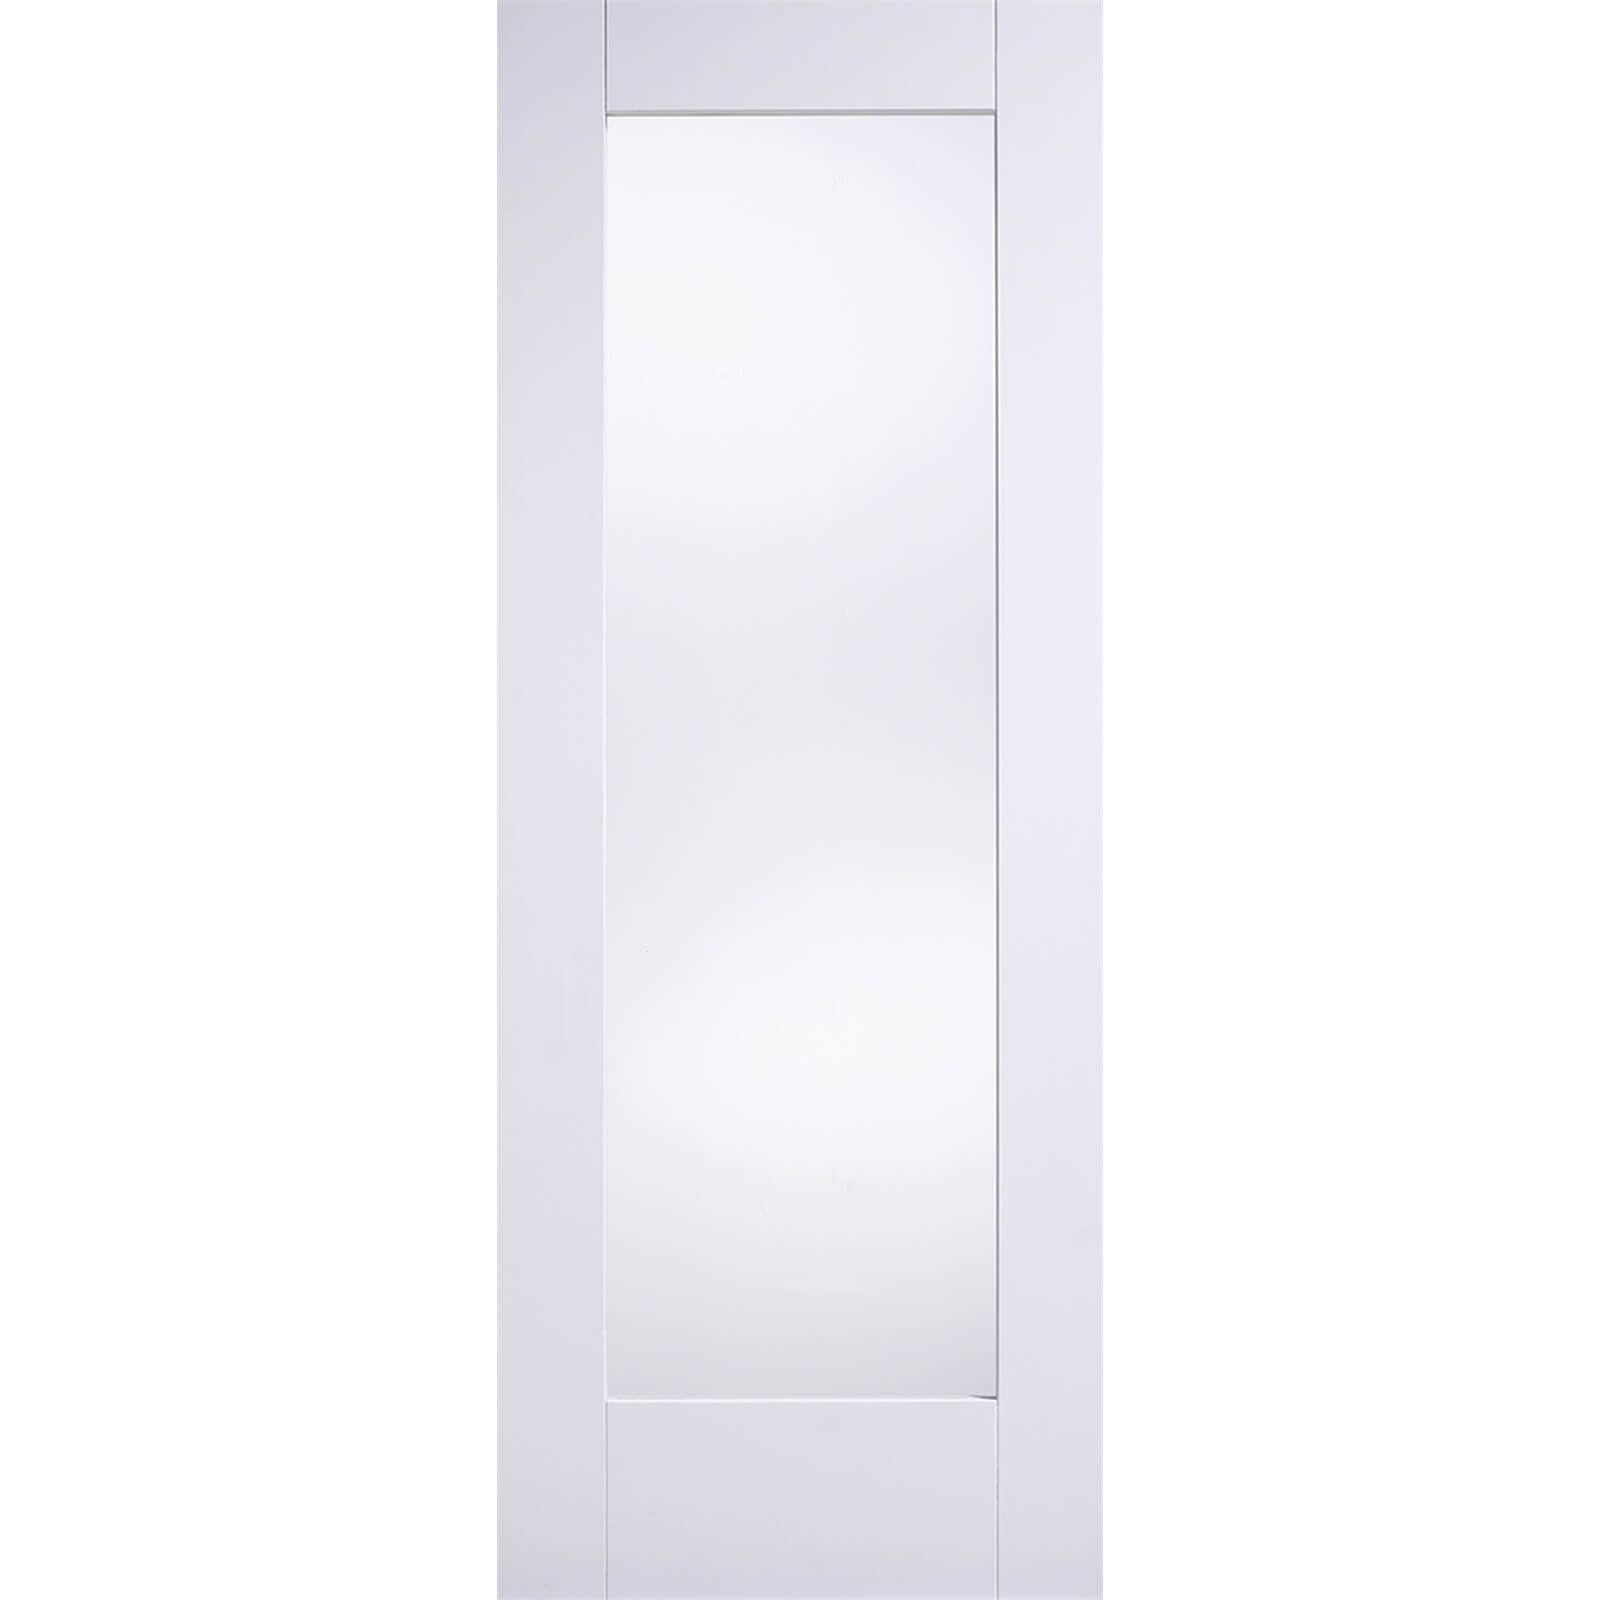 Shaker Internal Glazed Primed White 1 Lite Door - 838 x 1981mm